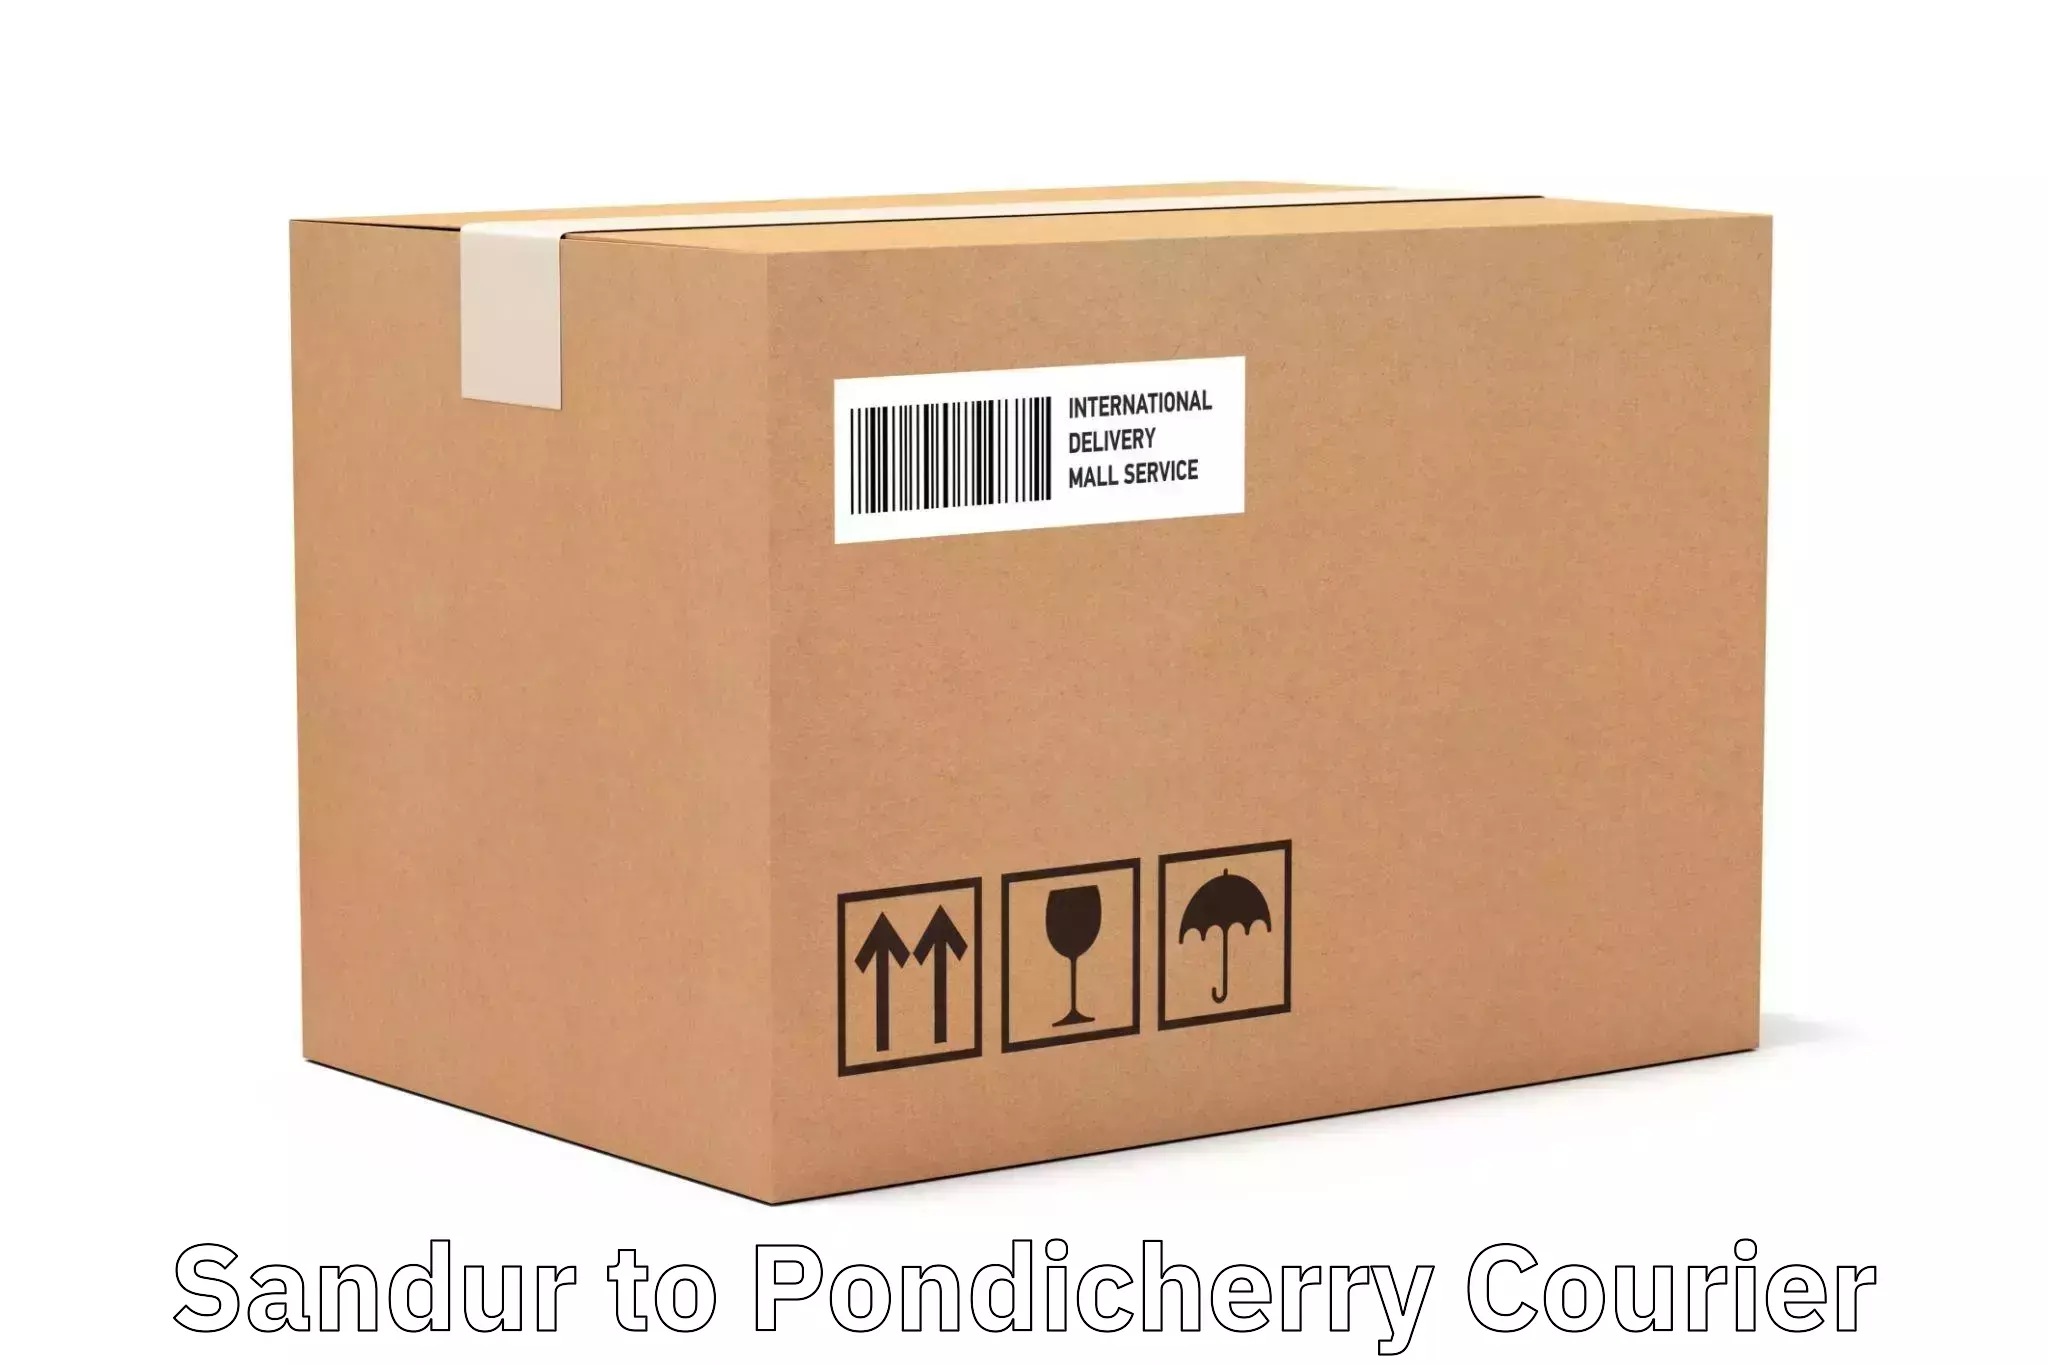 Flexible delivery scheduling Sandur to Pondicherry